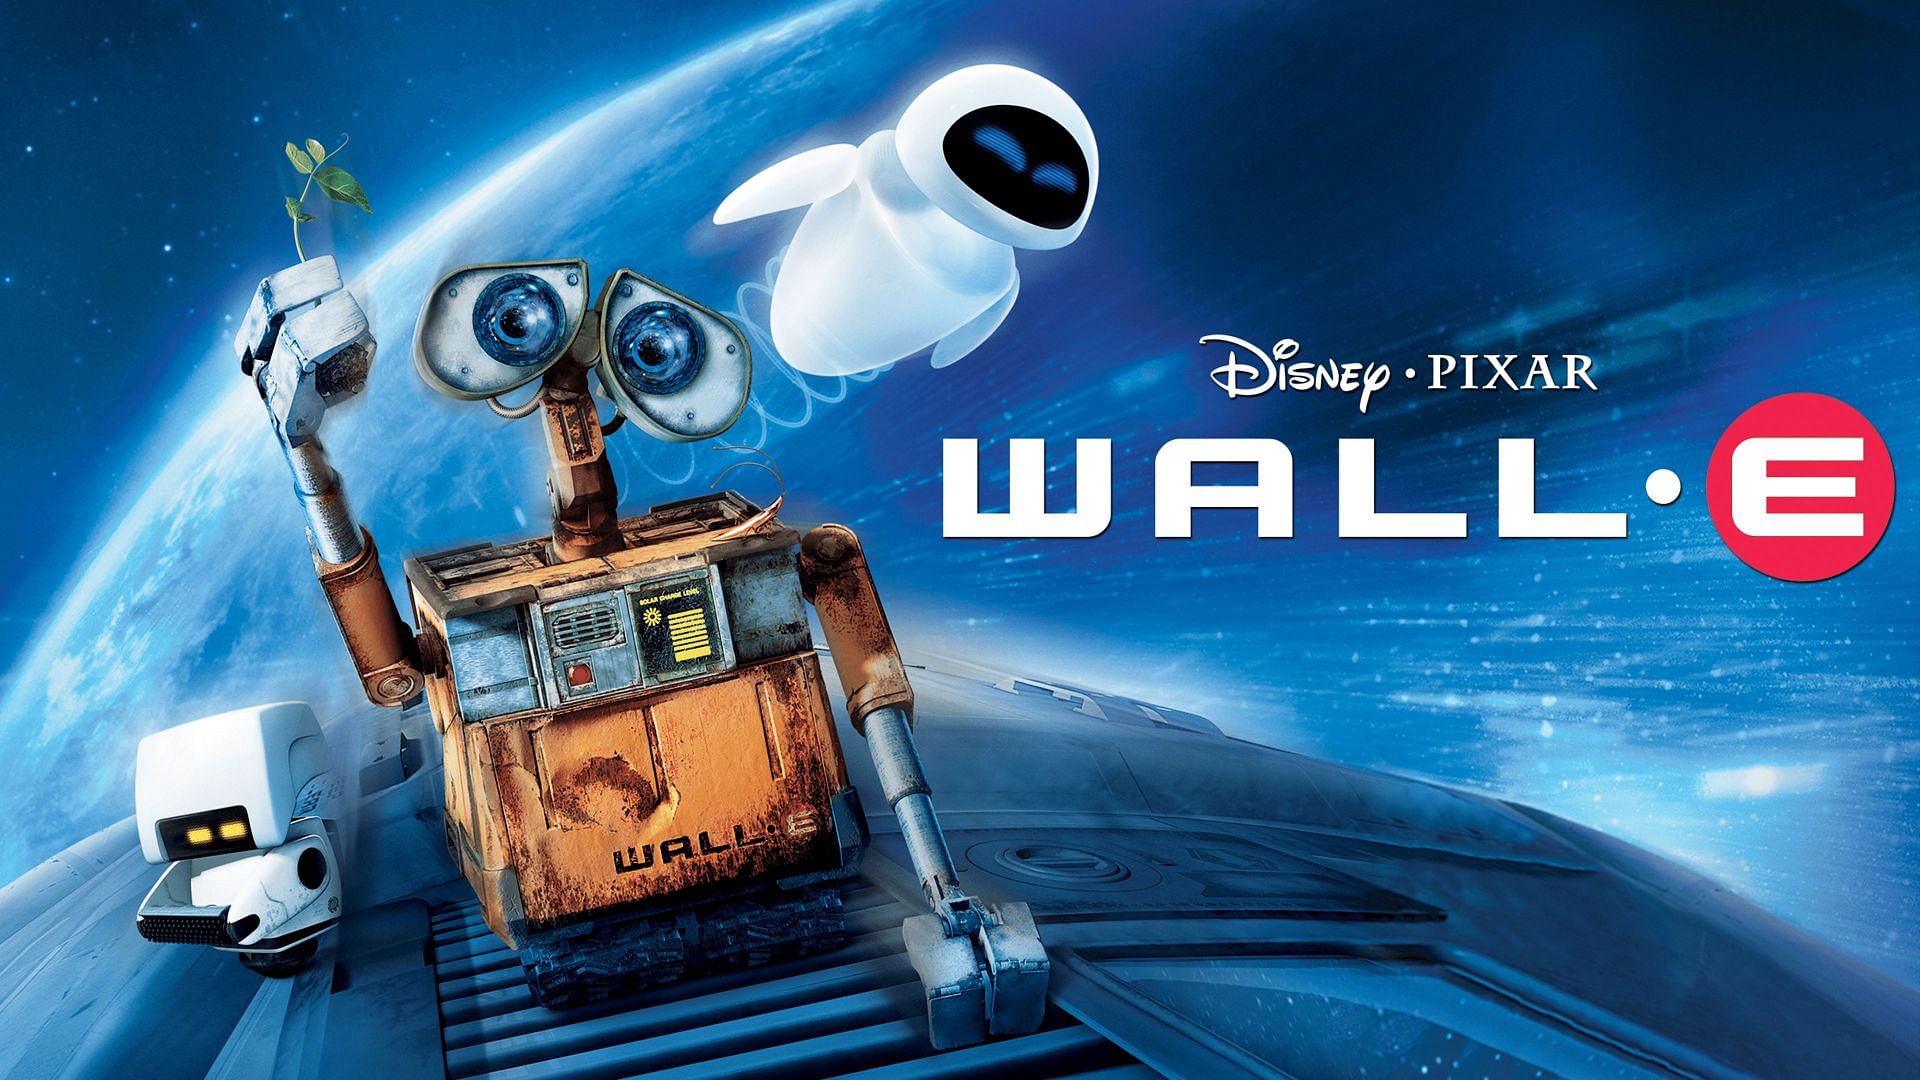 Wall-E, 2008 (Image via Pixar)